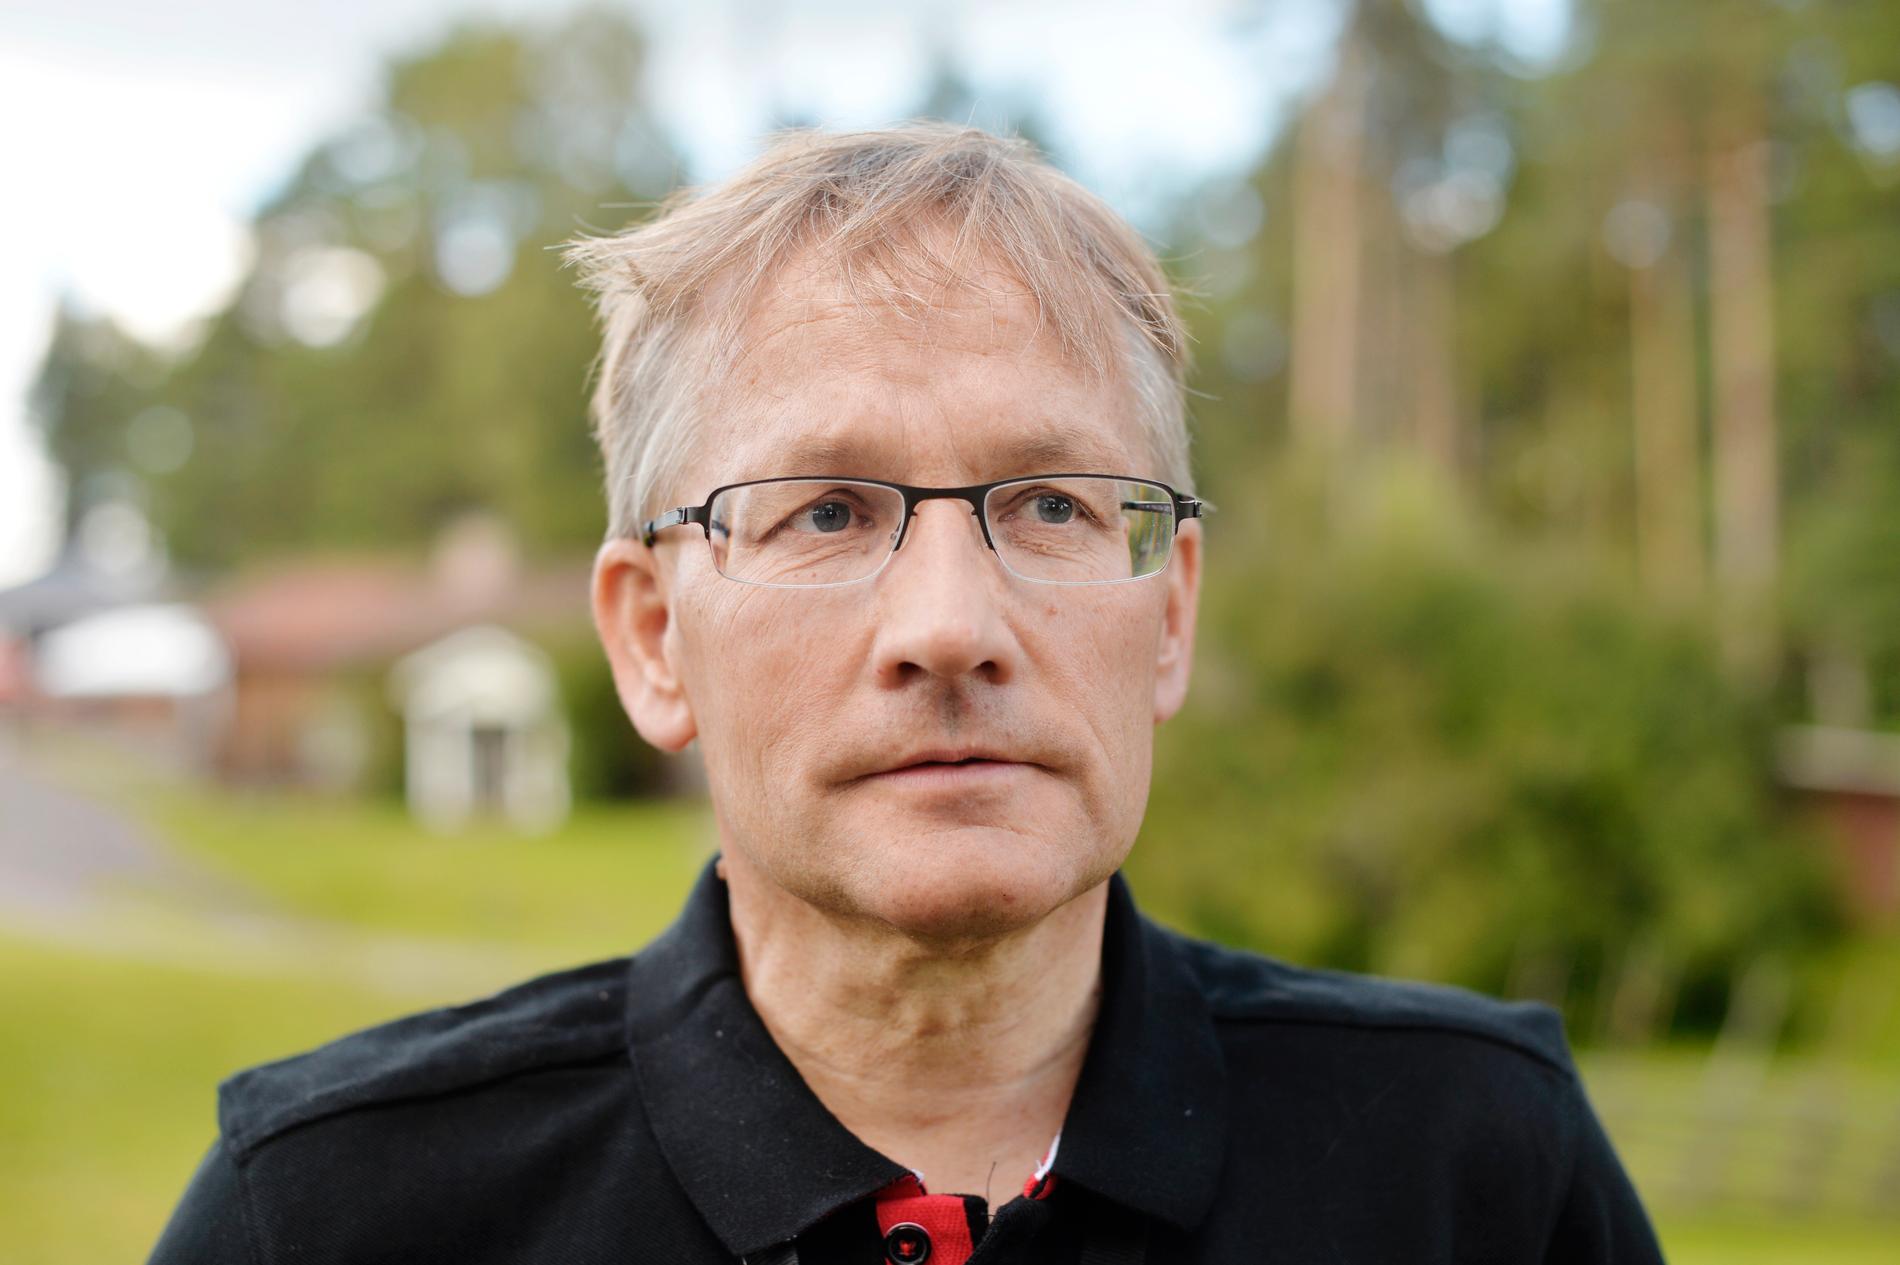 Lars Bälter, marknads- och medieansvarig på Dansbandsveckan i Malung, rasar mot sexbrotten.